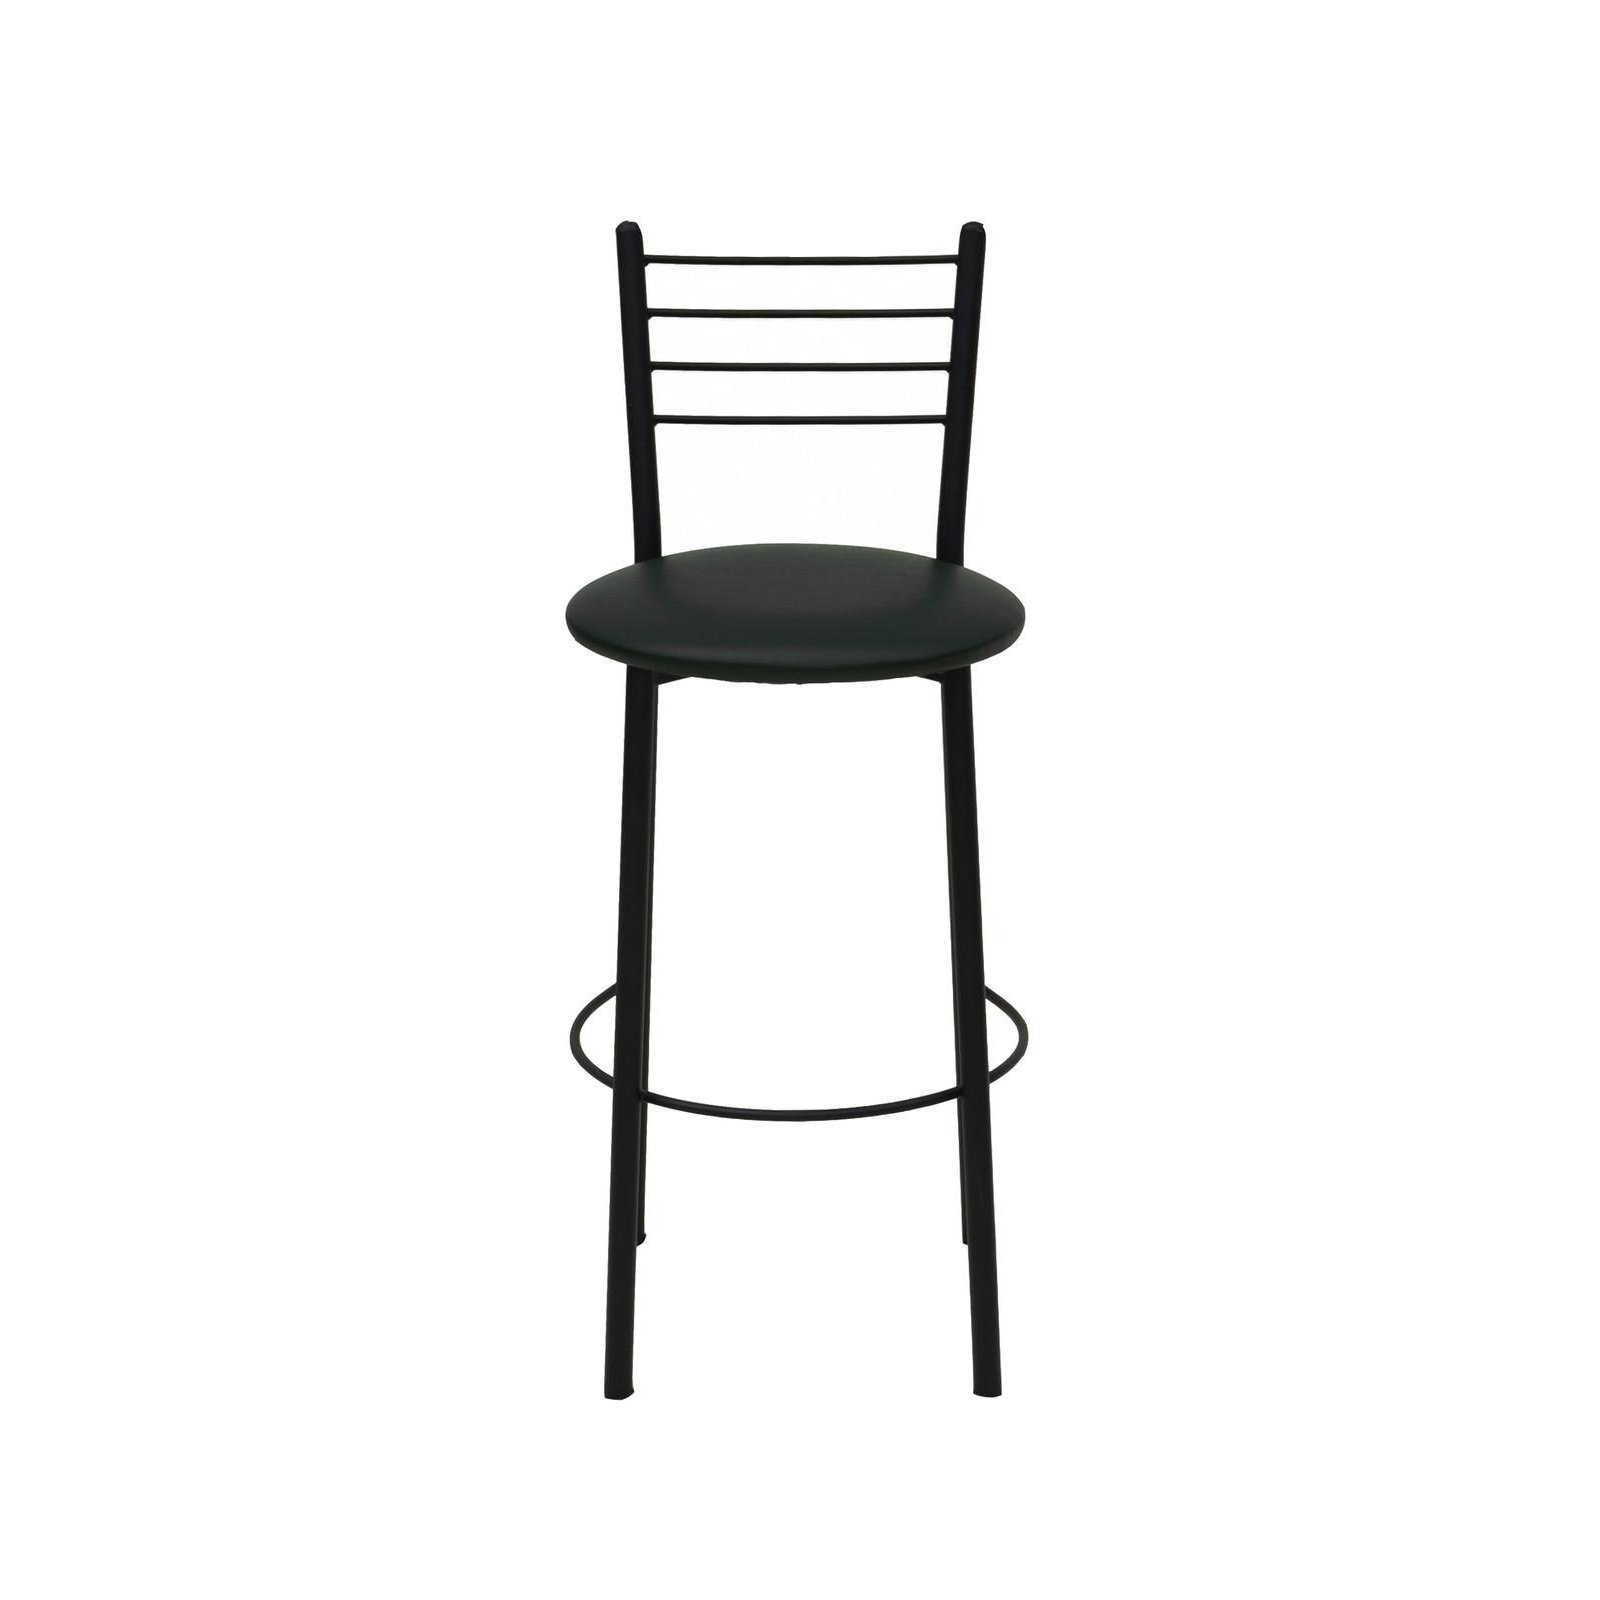 Барный стул Примтекс плюс барный 1022 Hoker black CZ-3 Black (1022 HOKER black CZ-3)